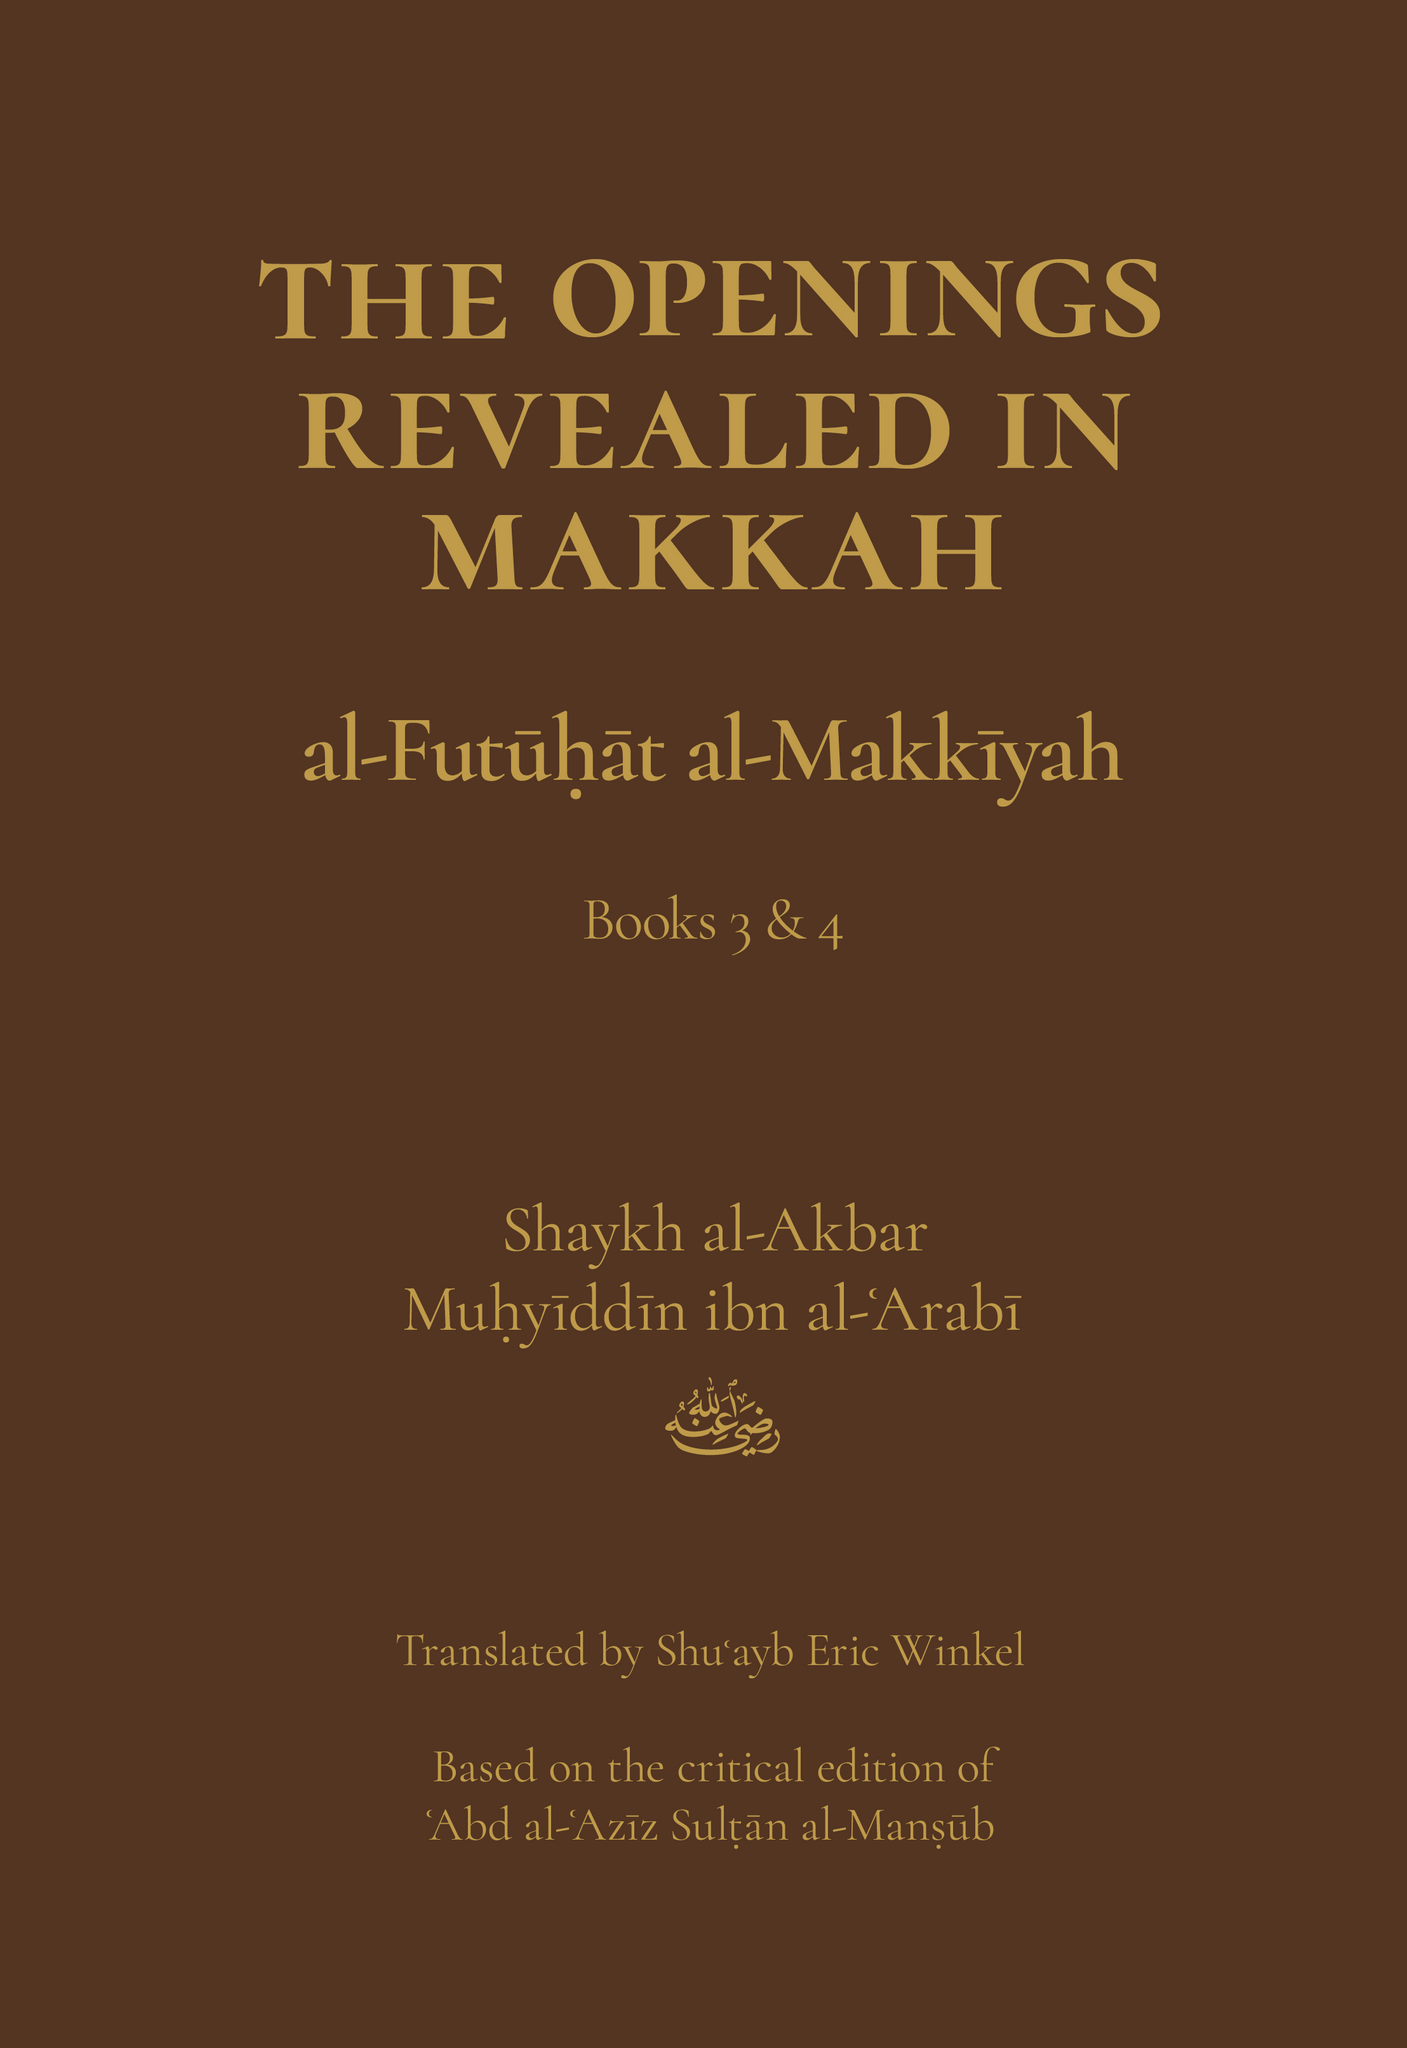 The Openings Revealed in Makkah, Volume 2